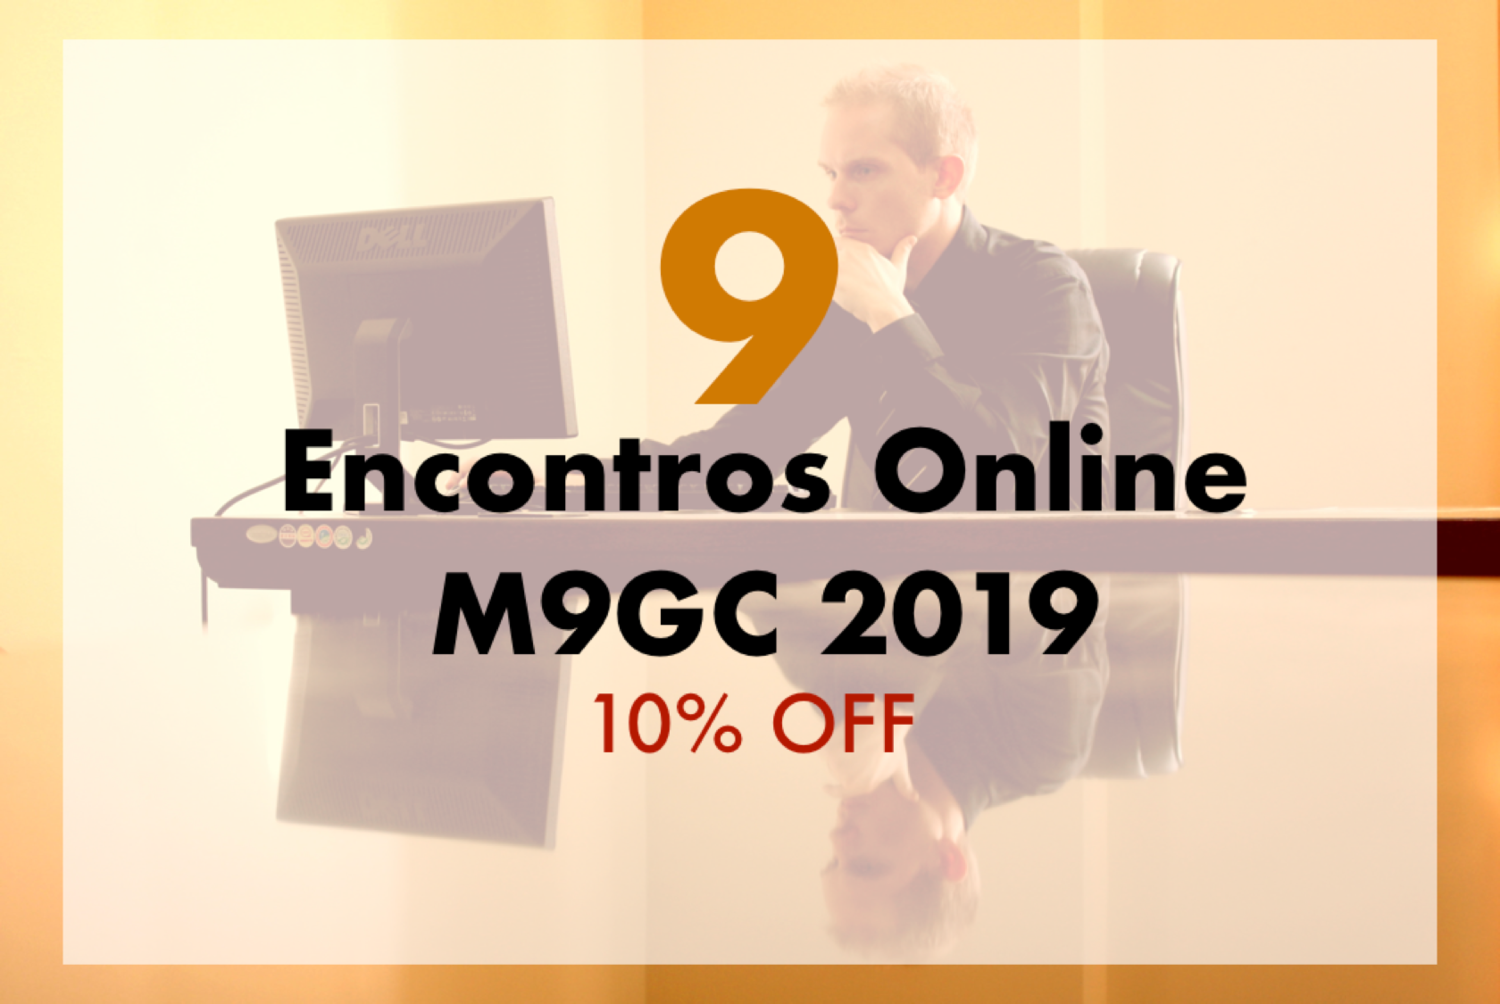 Pacote com 9 Encontros Online M9GC 2019